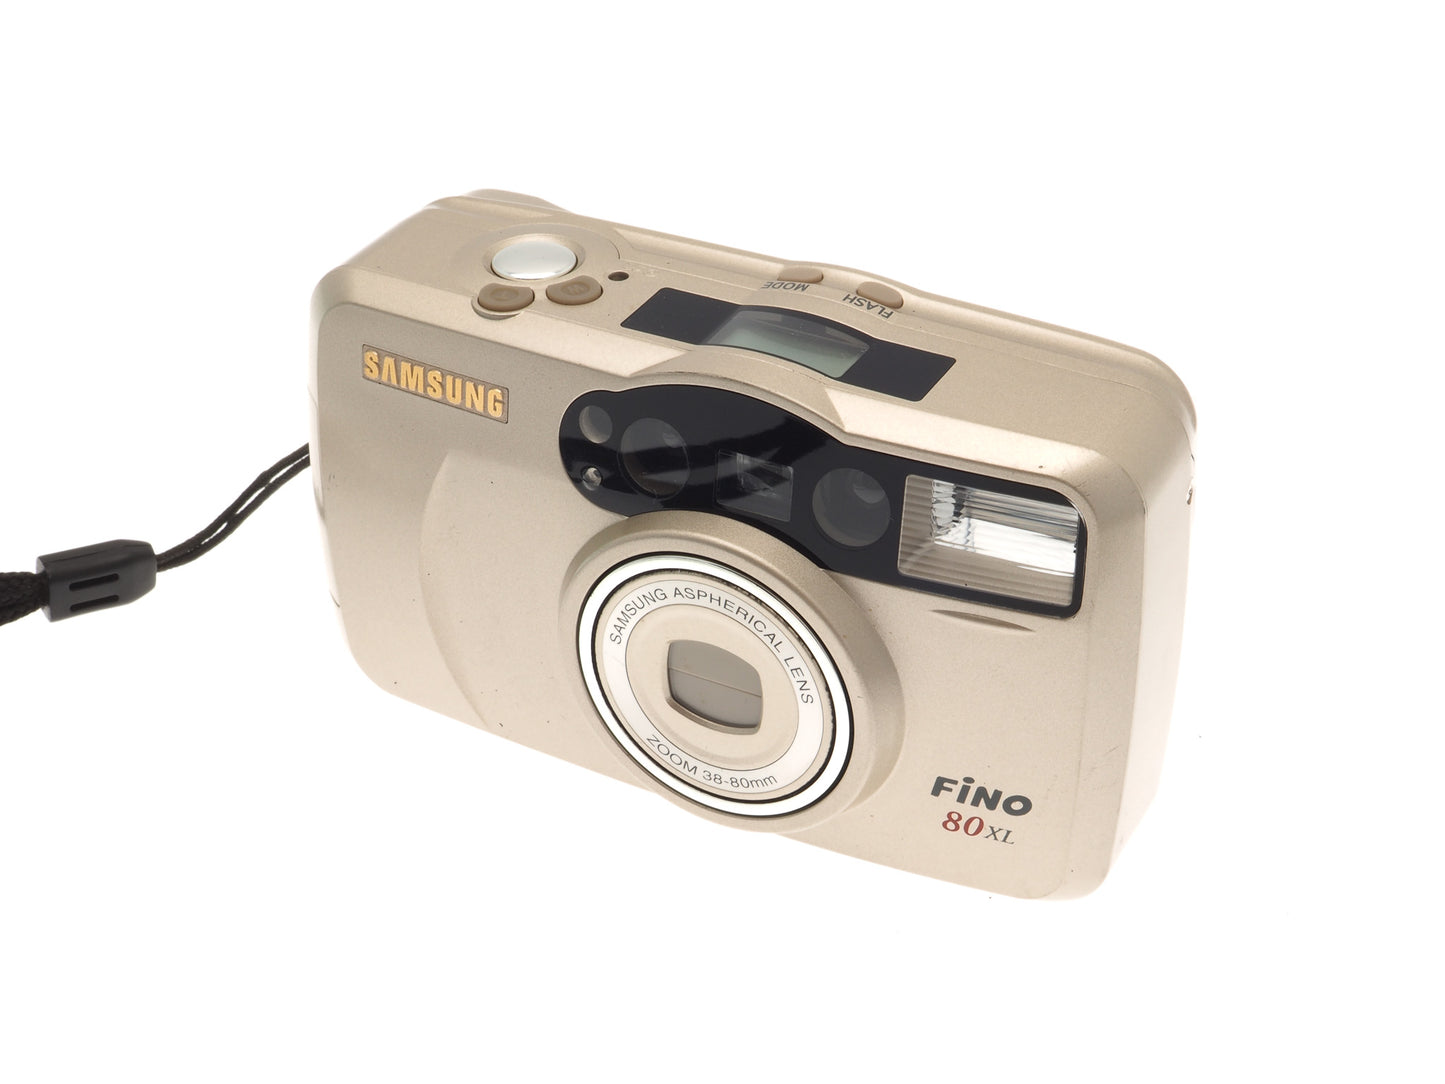 Samsung Fino 80 XL - Camera